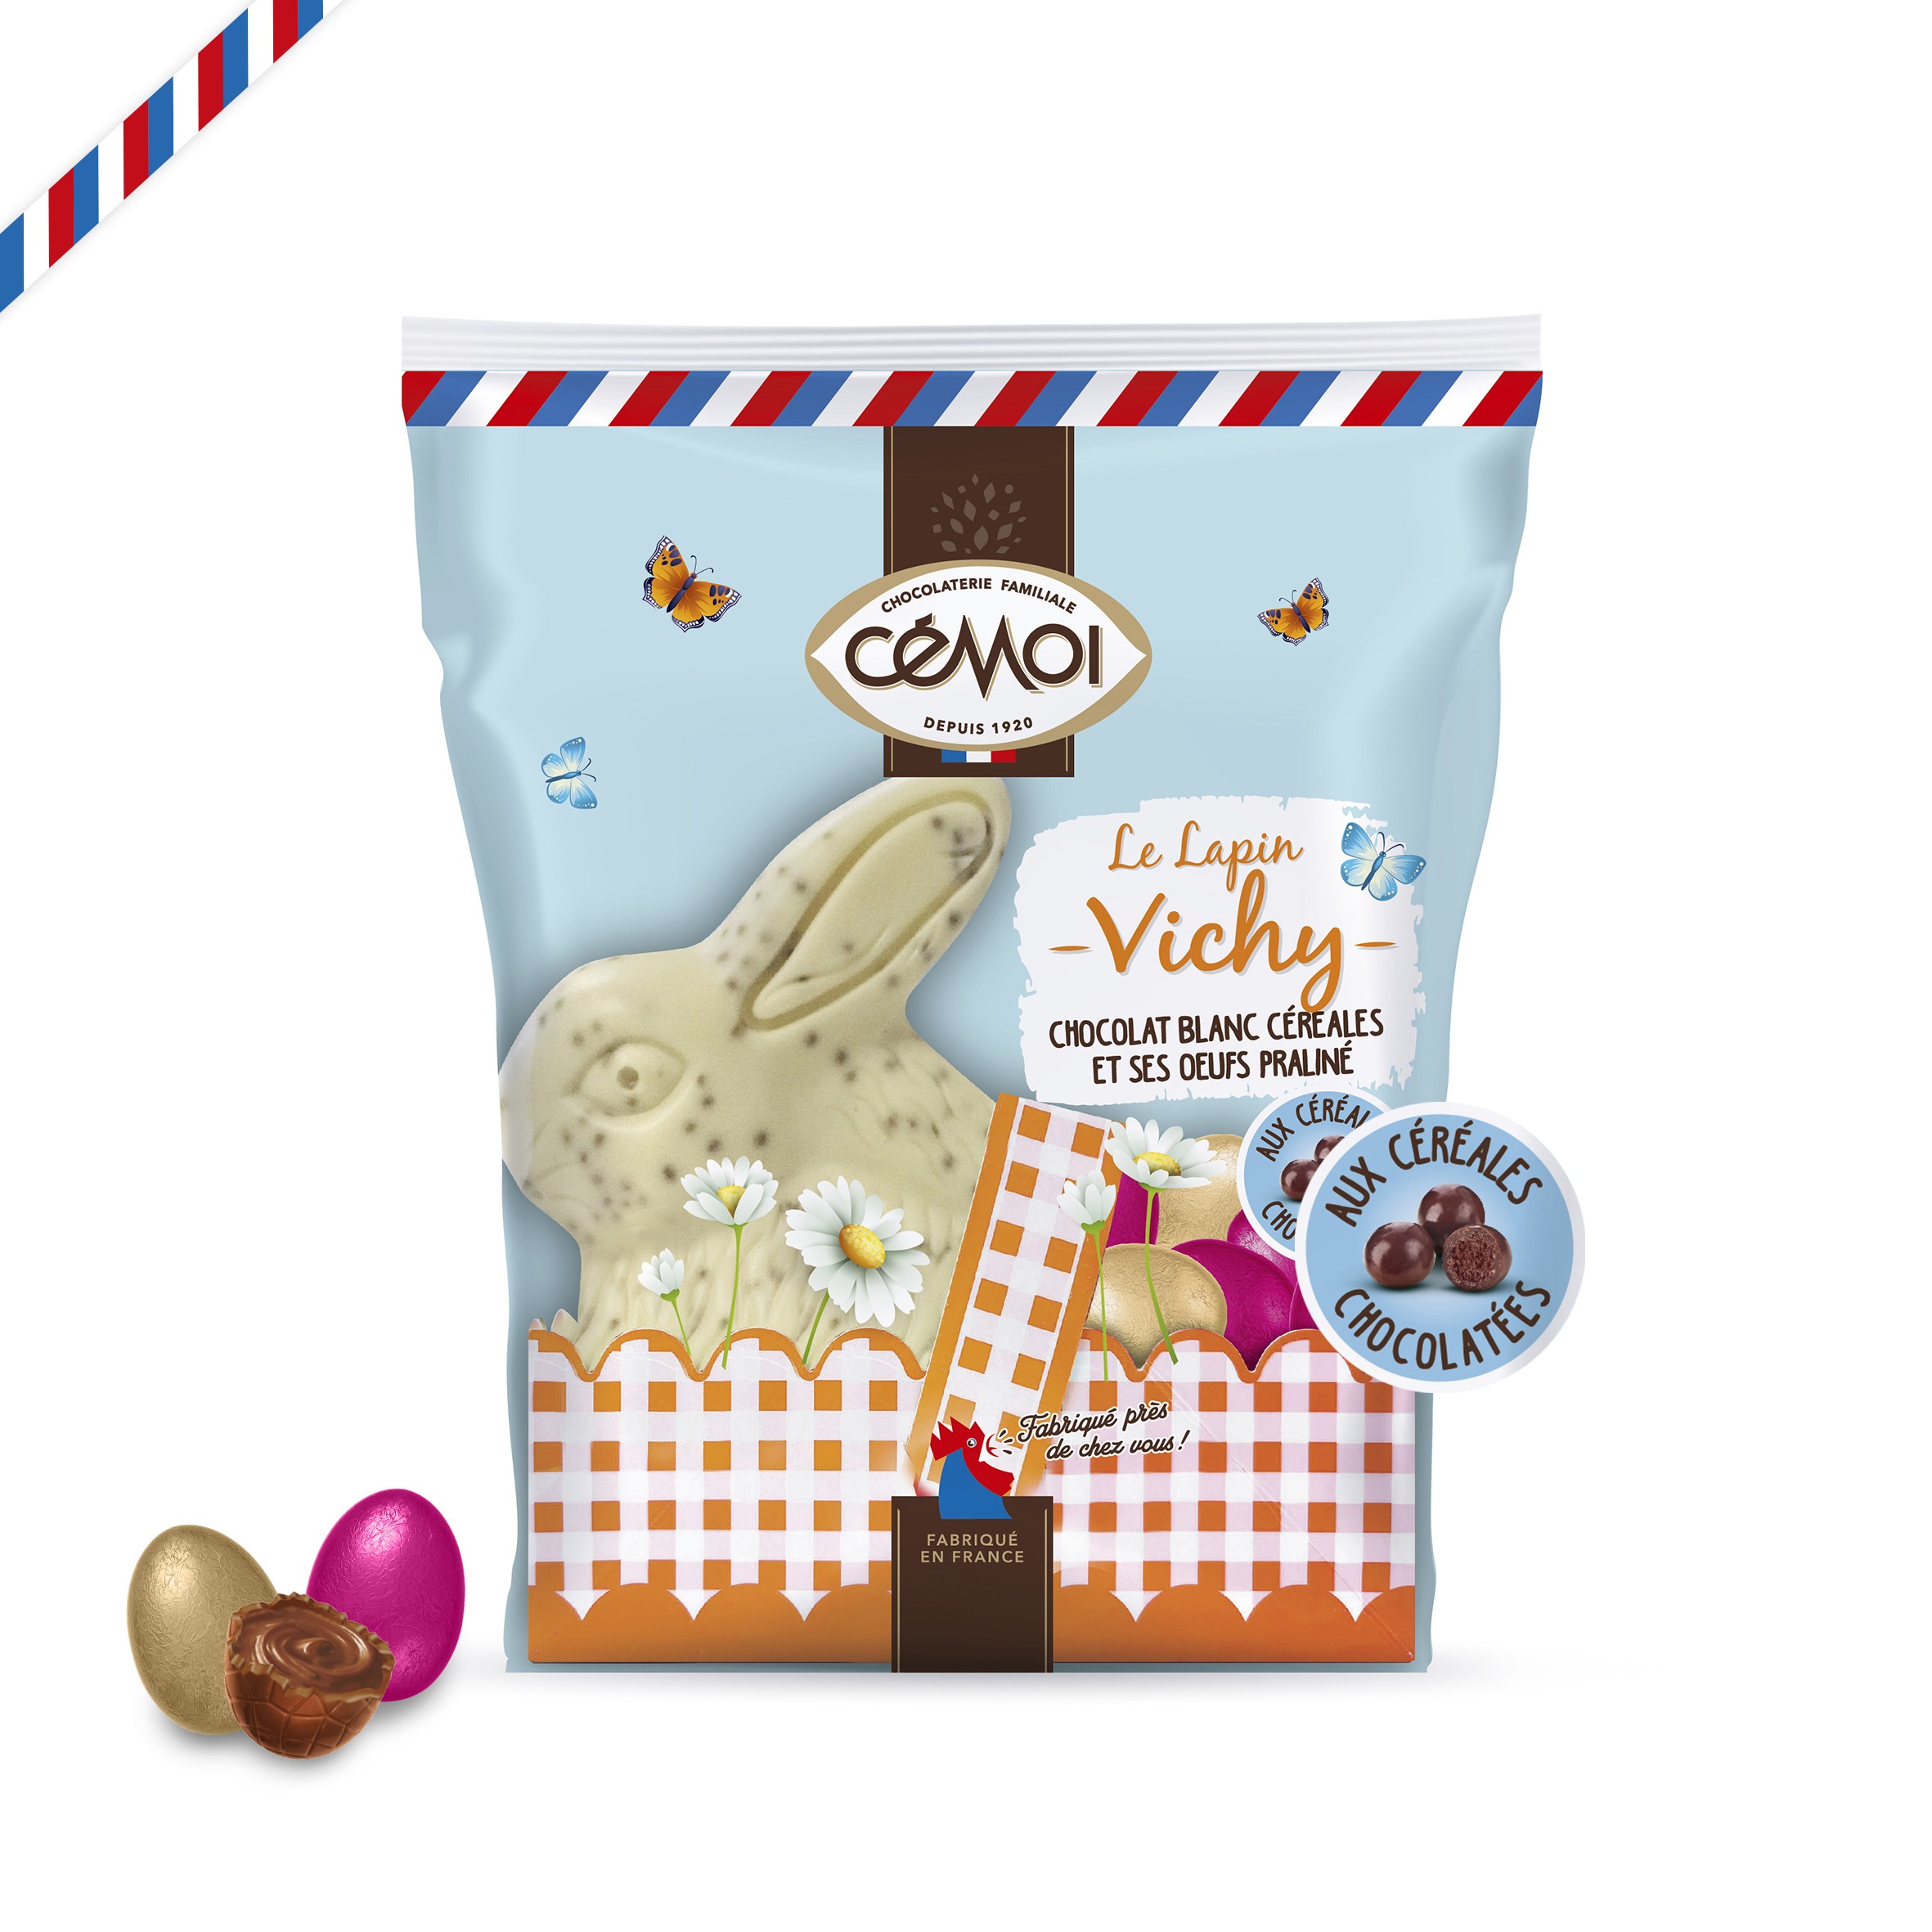 Le lapin Vichy au chocolat blanc et céréales chocolatées, et ses oeufs praliné, 159g